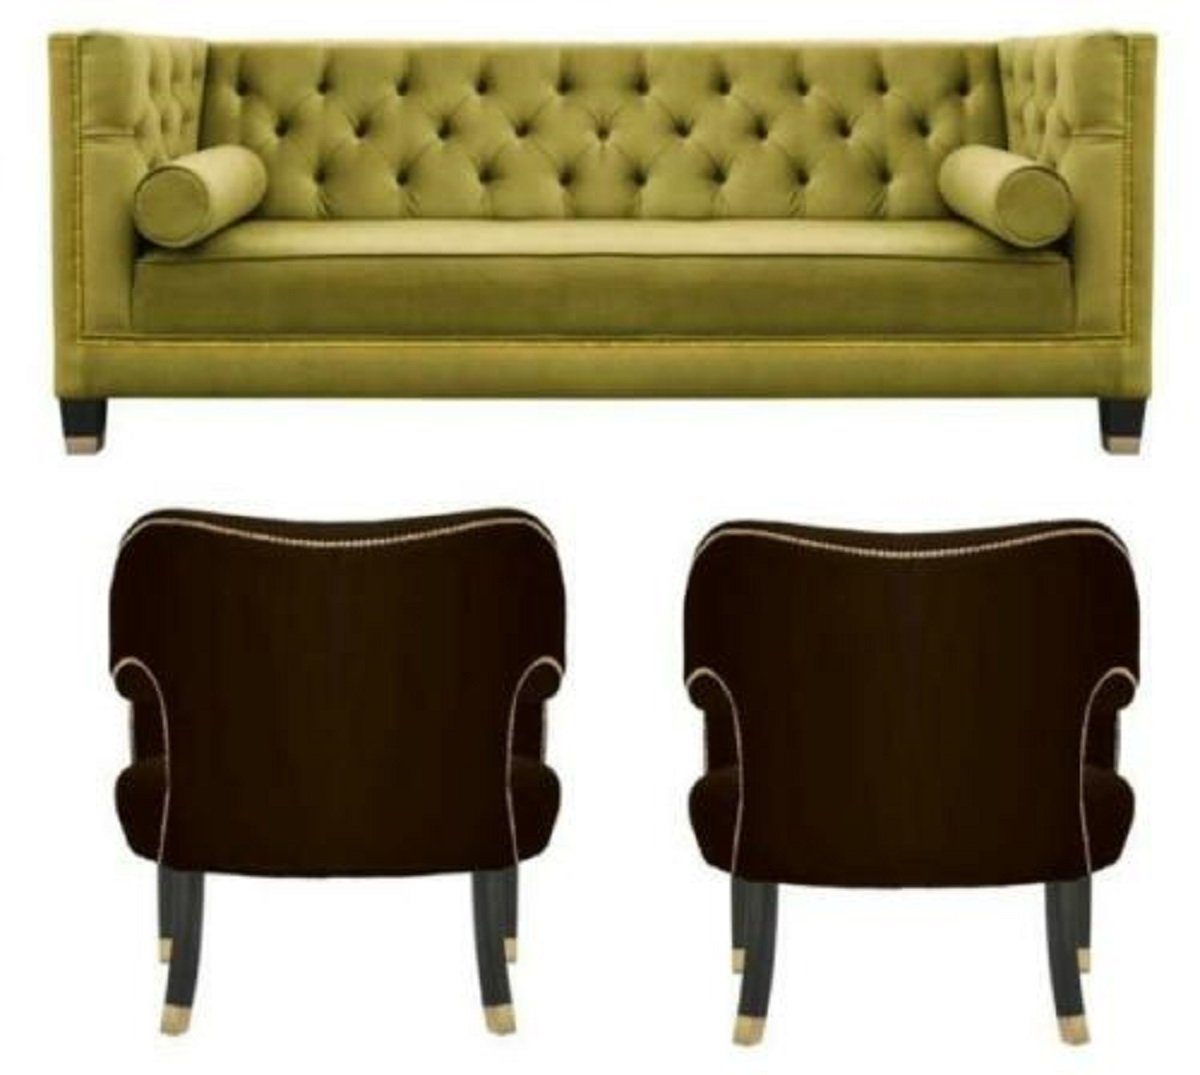 JVmoebel Sofa Europe Gelbe Couch Sofagarnitur Sofa 3tlg., Samt Einsitzer Made in Chesterfield